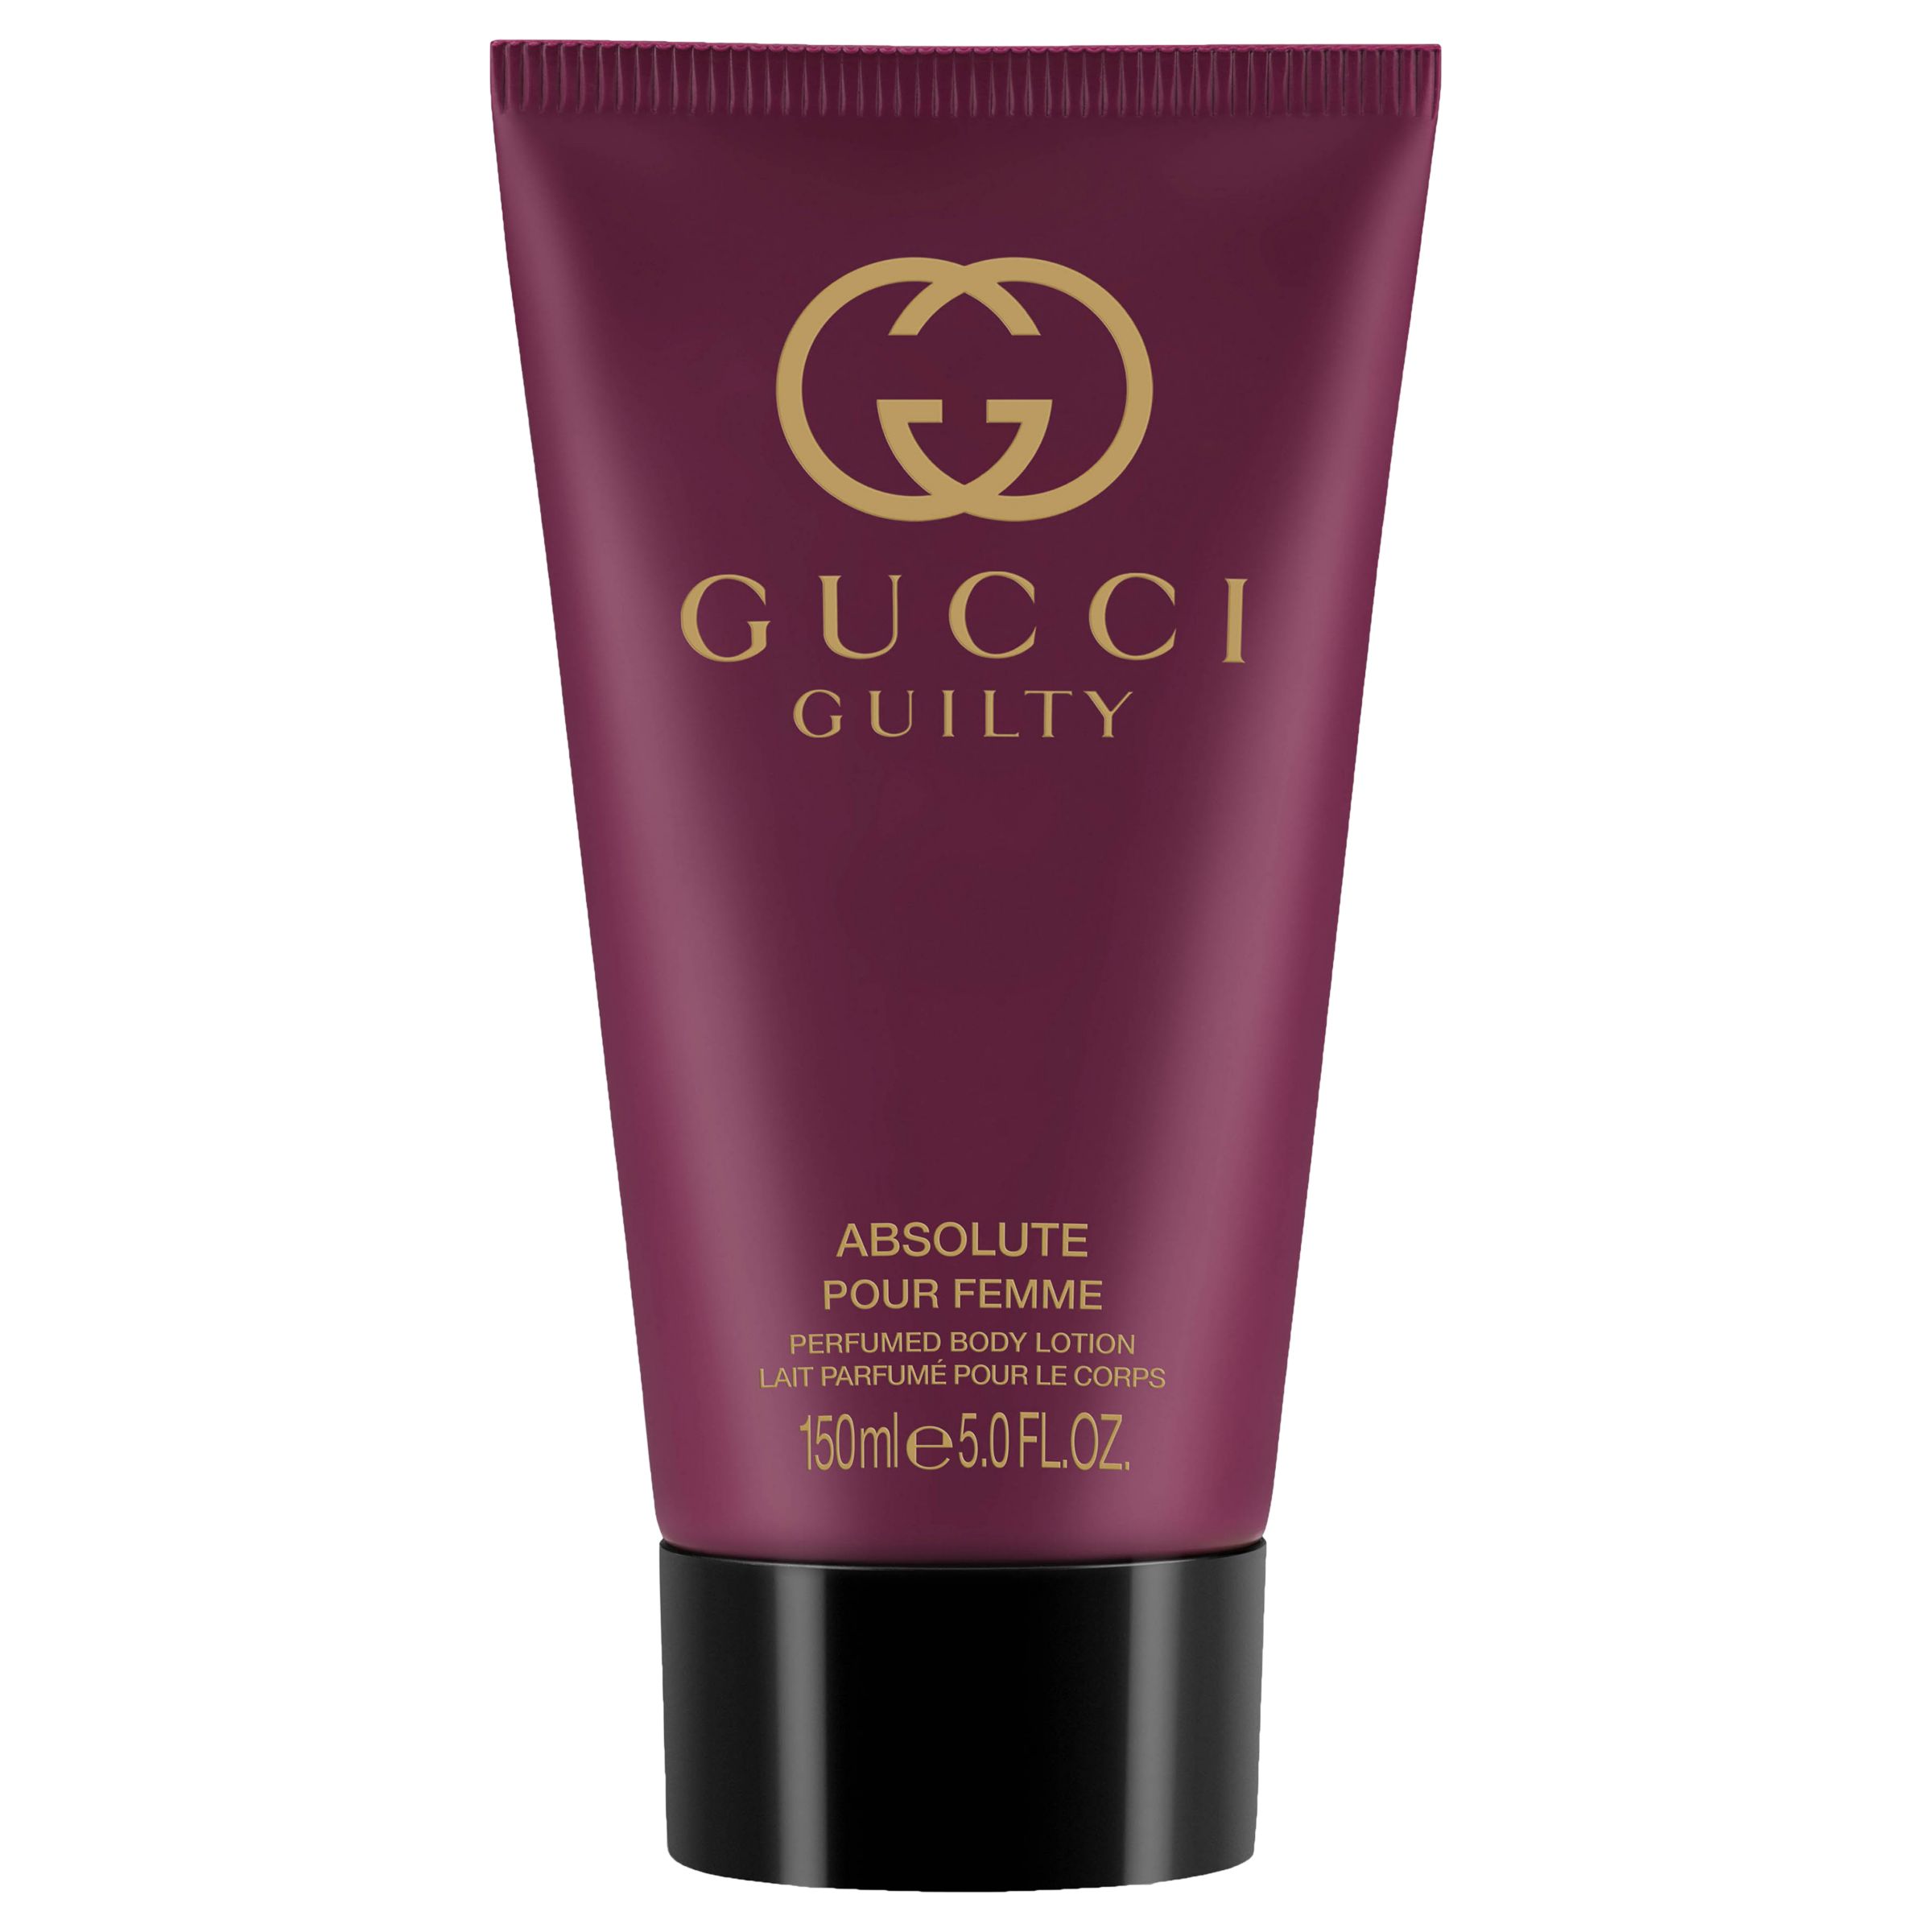 Retaliate afskaffet værktøj Gucci Guilty Absolute Eau de Parfum for Her Body Lotion, 150ml